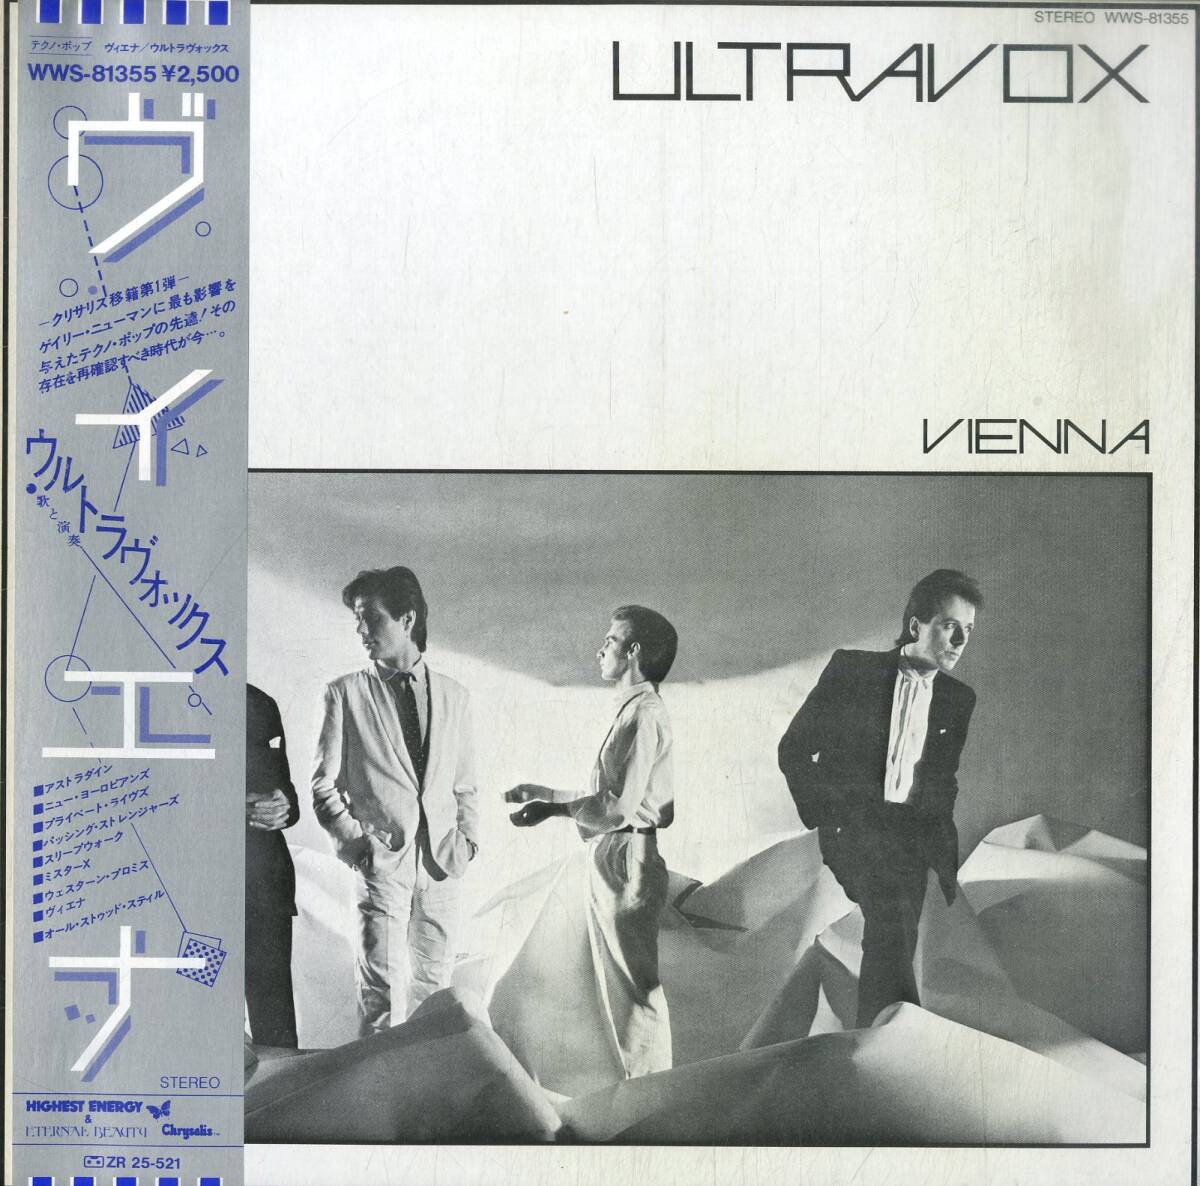 A00589648/LP/ウルトラヴォックス (ULTRAVOX)「Vienna (1980年・WWS-81355・ニューウェイヴ・シンセポップ)」_画像1